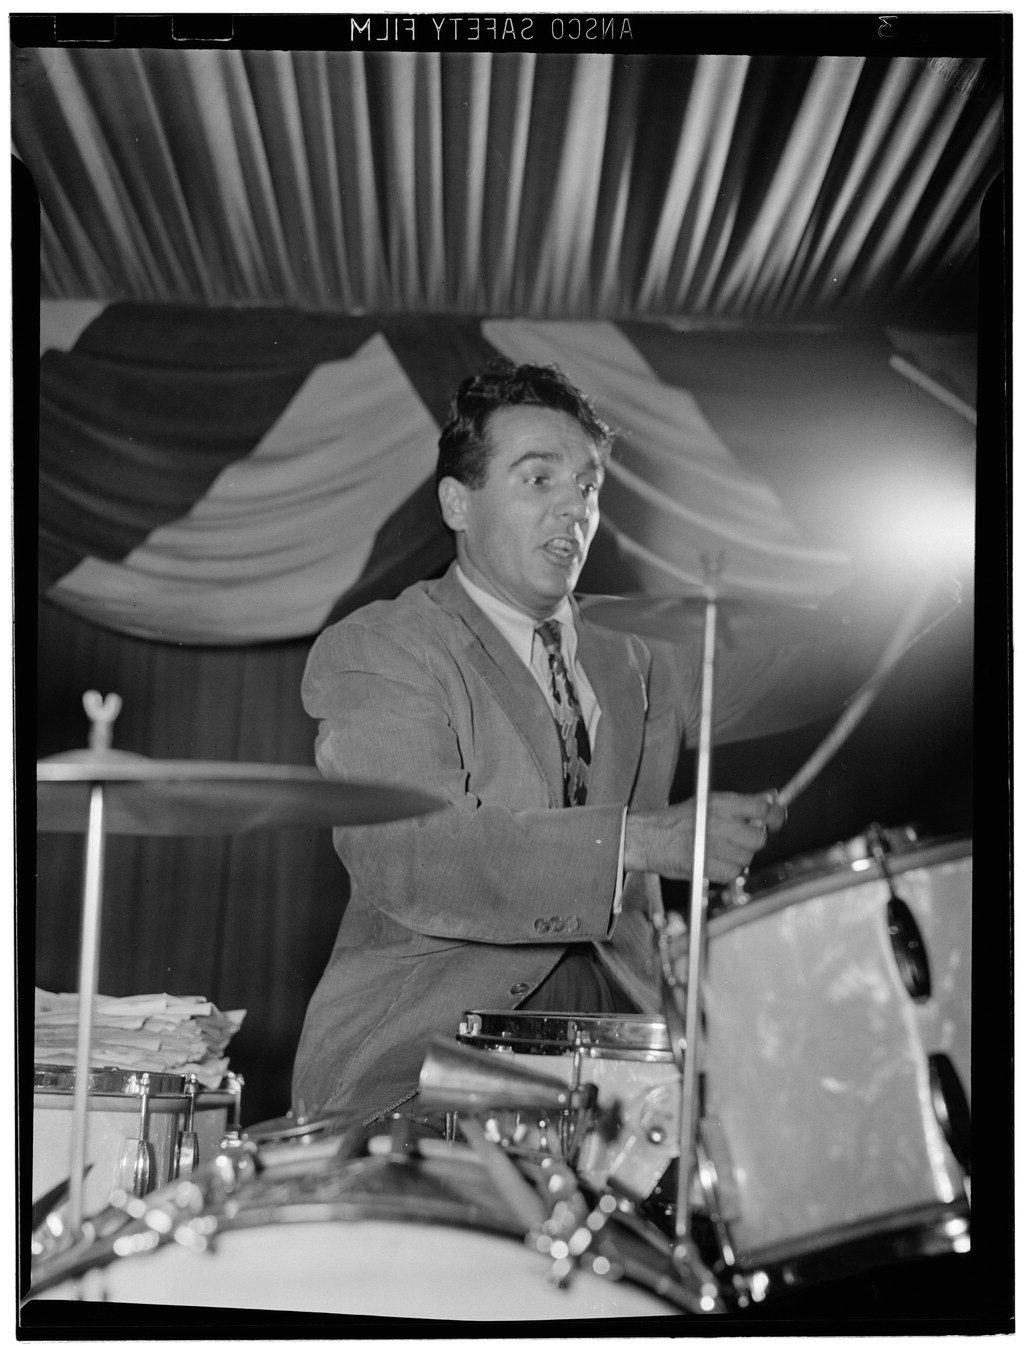 Famous Drummer - Gene Krupa